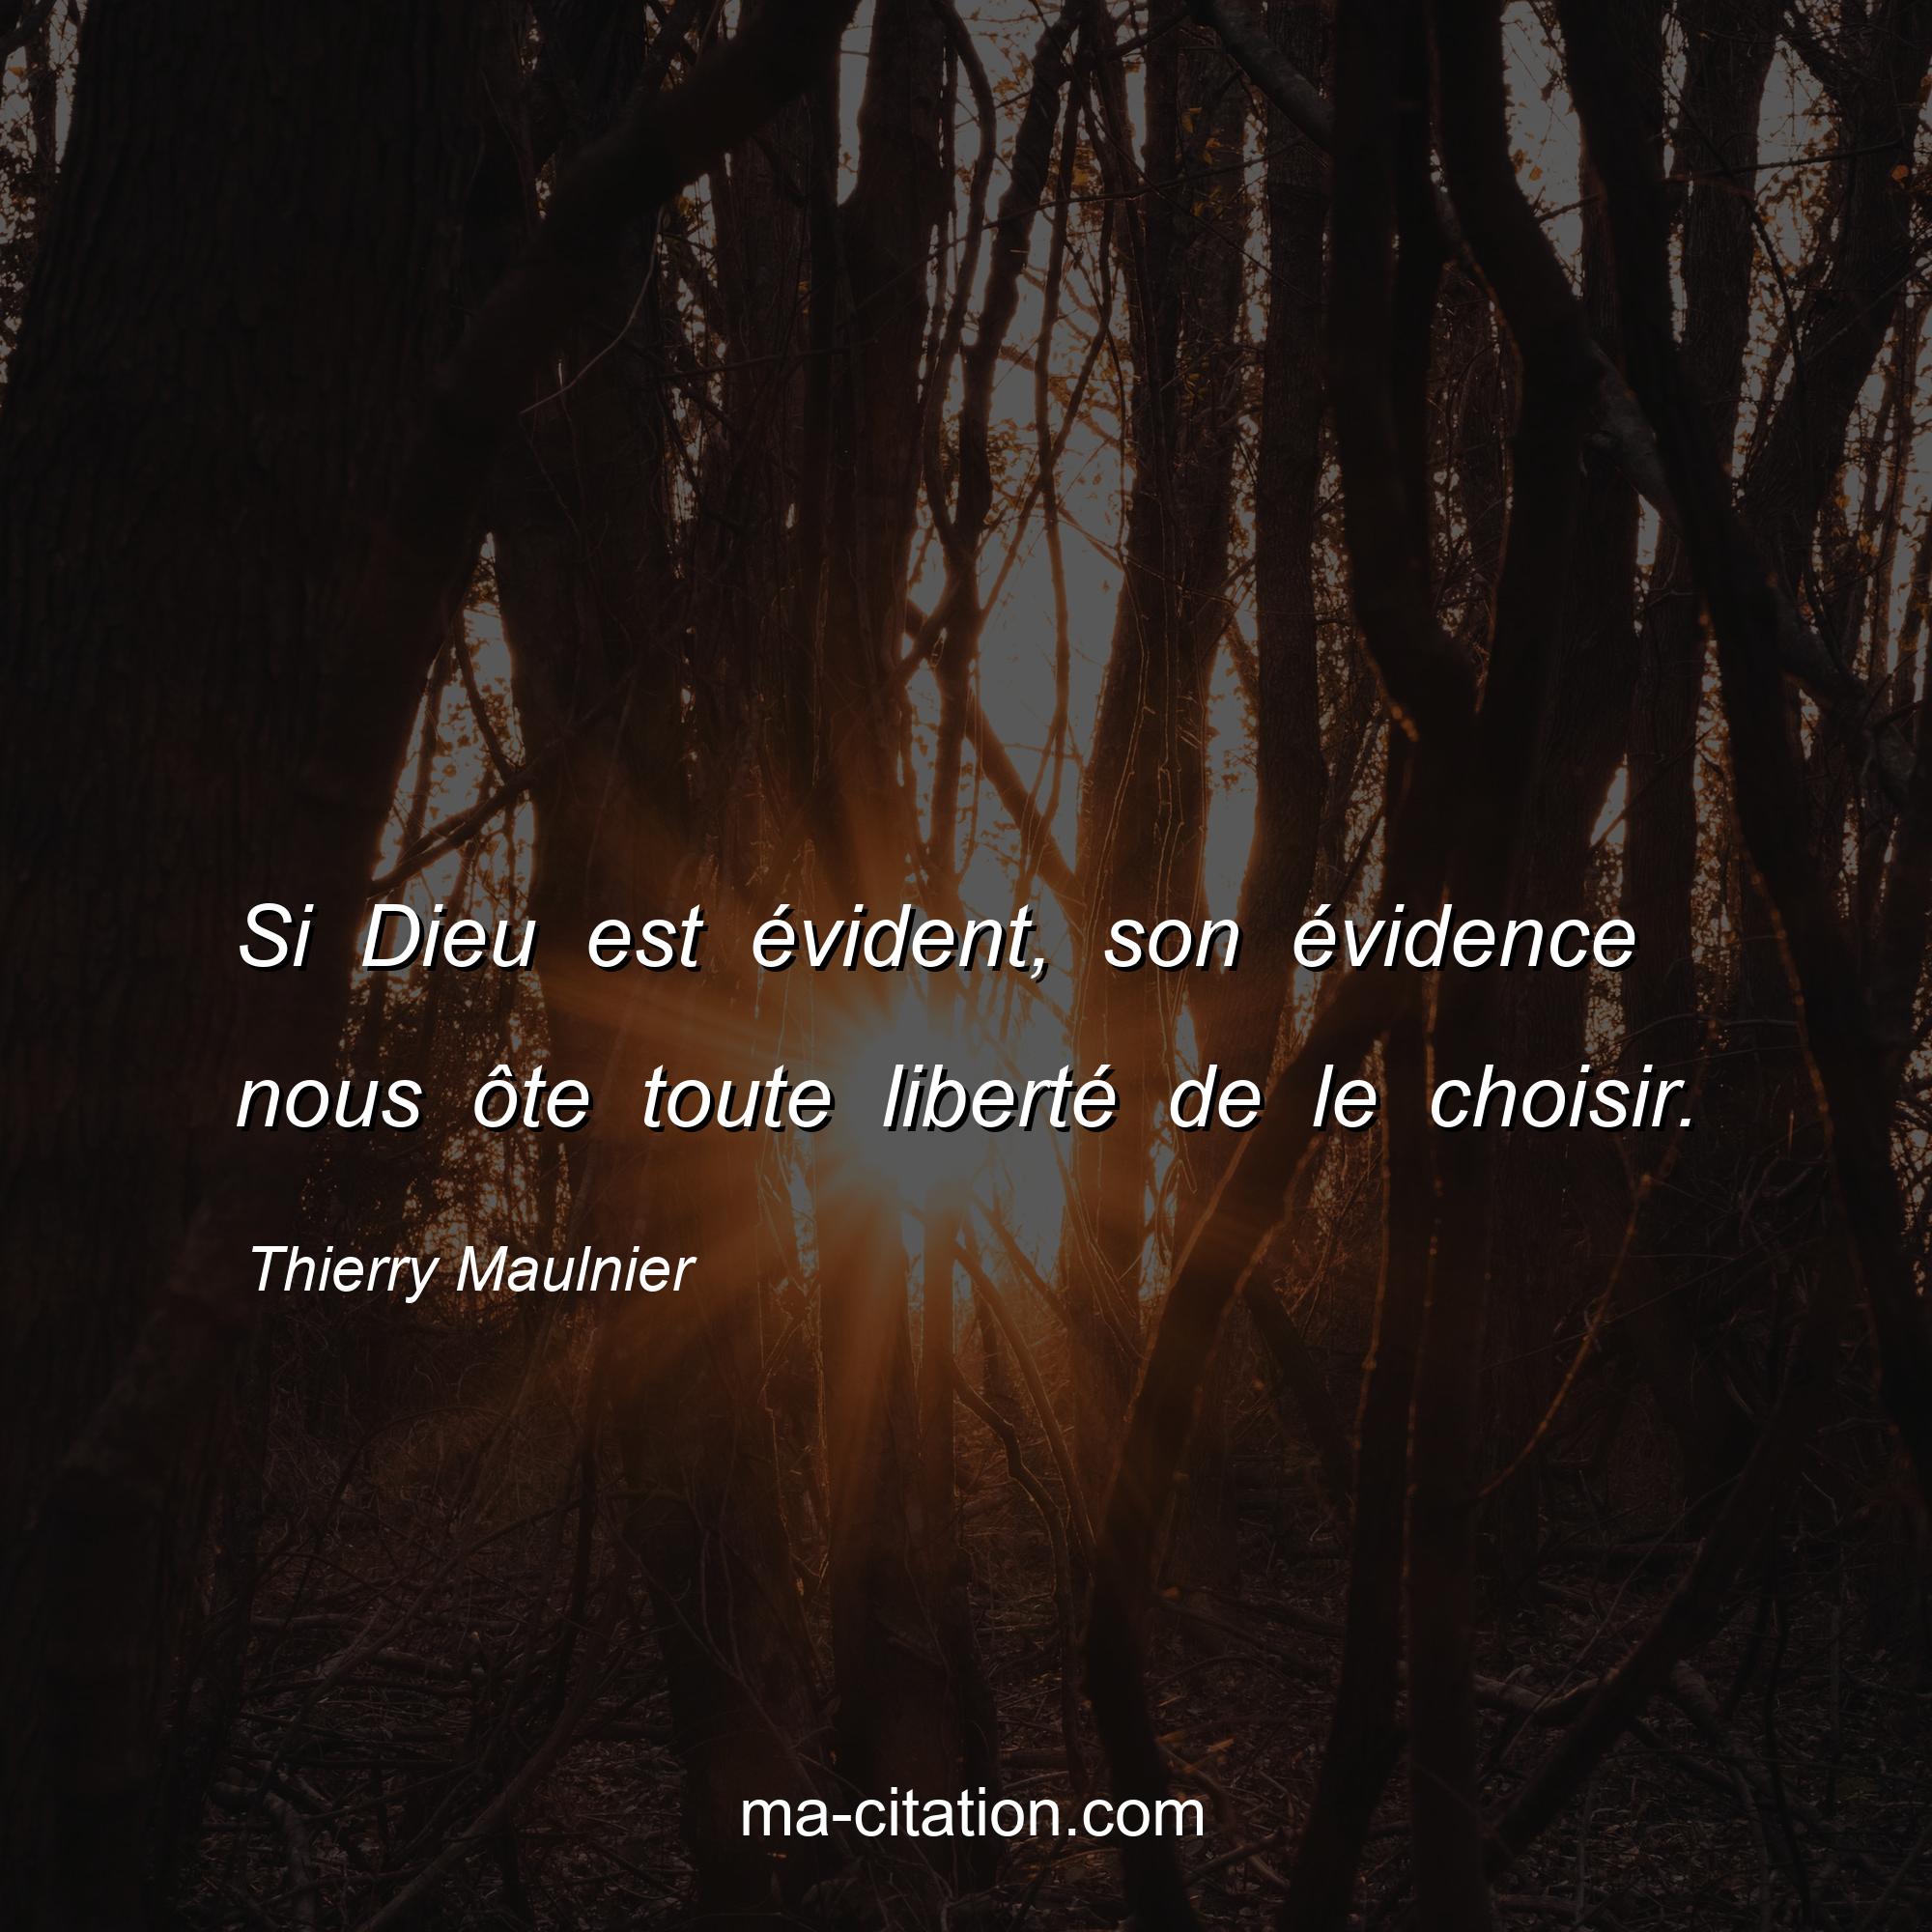 Thierry Maulnier : Si Dieu est évident, son évidence nous ôte toute liberté de le choisir.